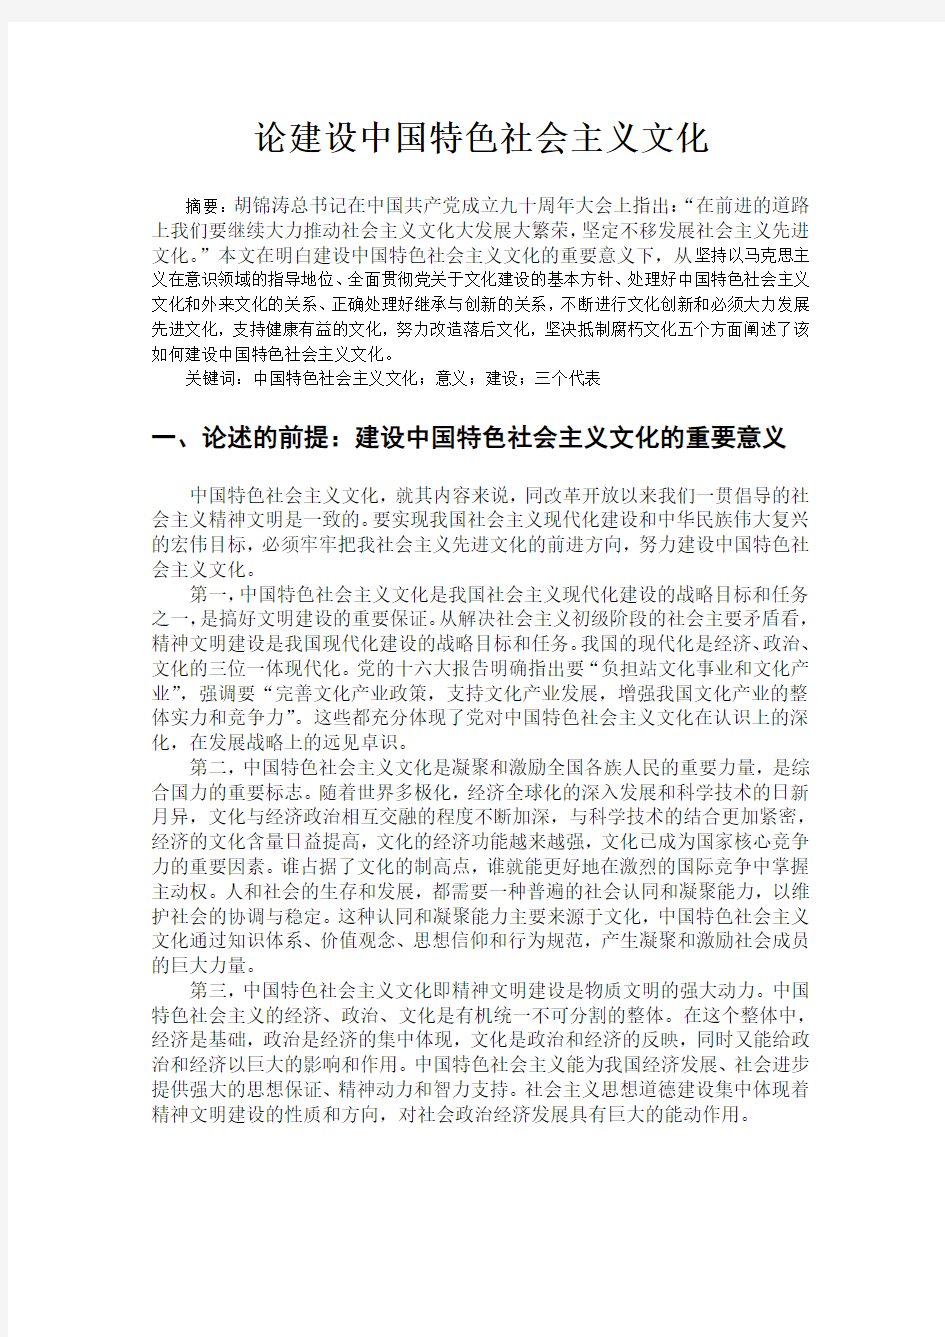 【完整版毕业论文】马克思课论文--论建设中国特色社会主义文化